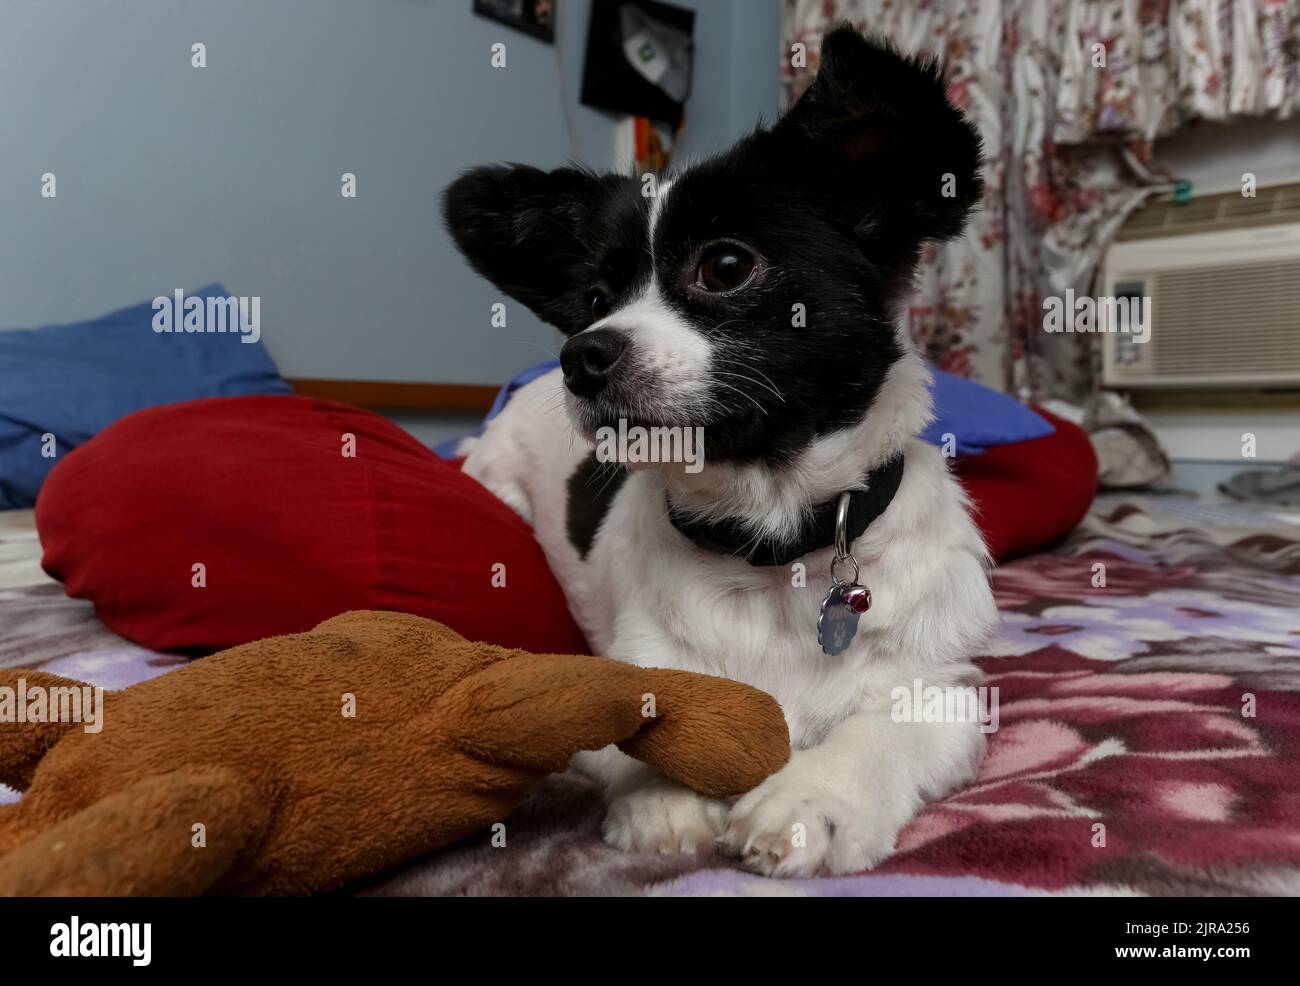 Eine Nahaufnahme eines schwarz-weißen Papillon-Hundes, der mit seinen Spielsachen im Raum liegt Stockfoto